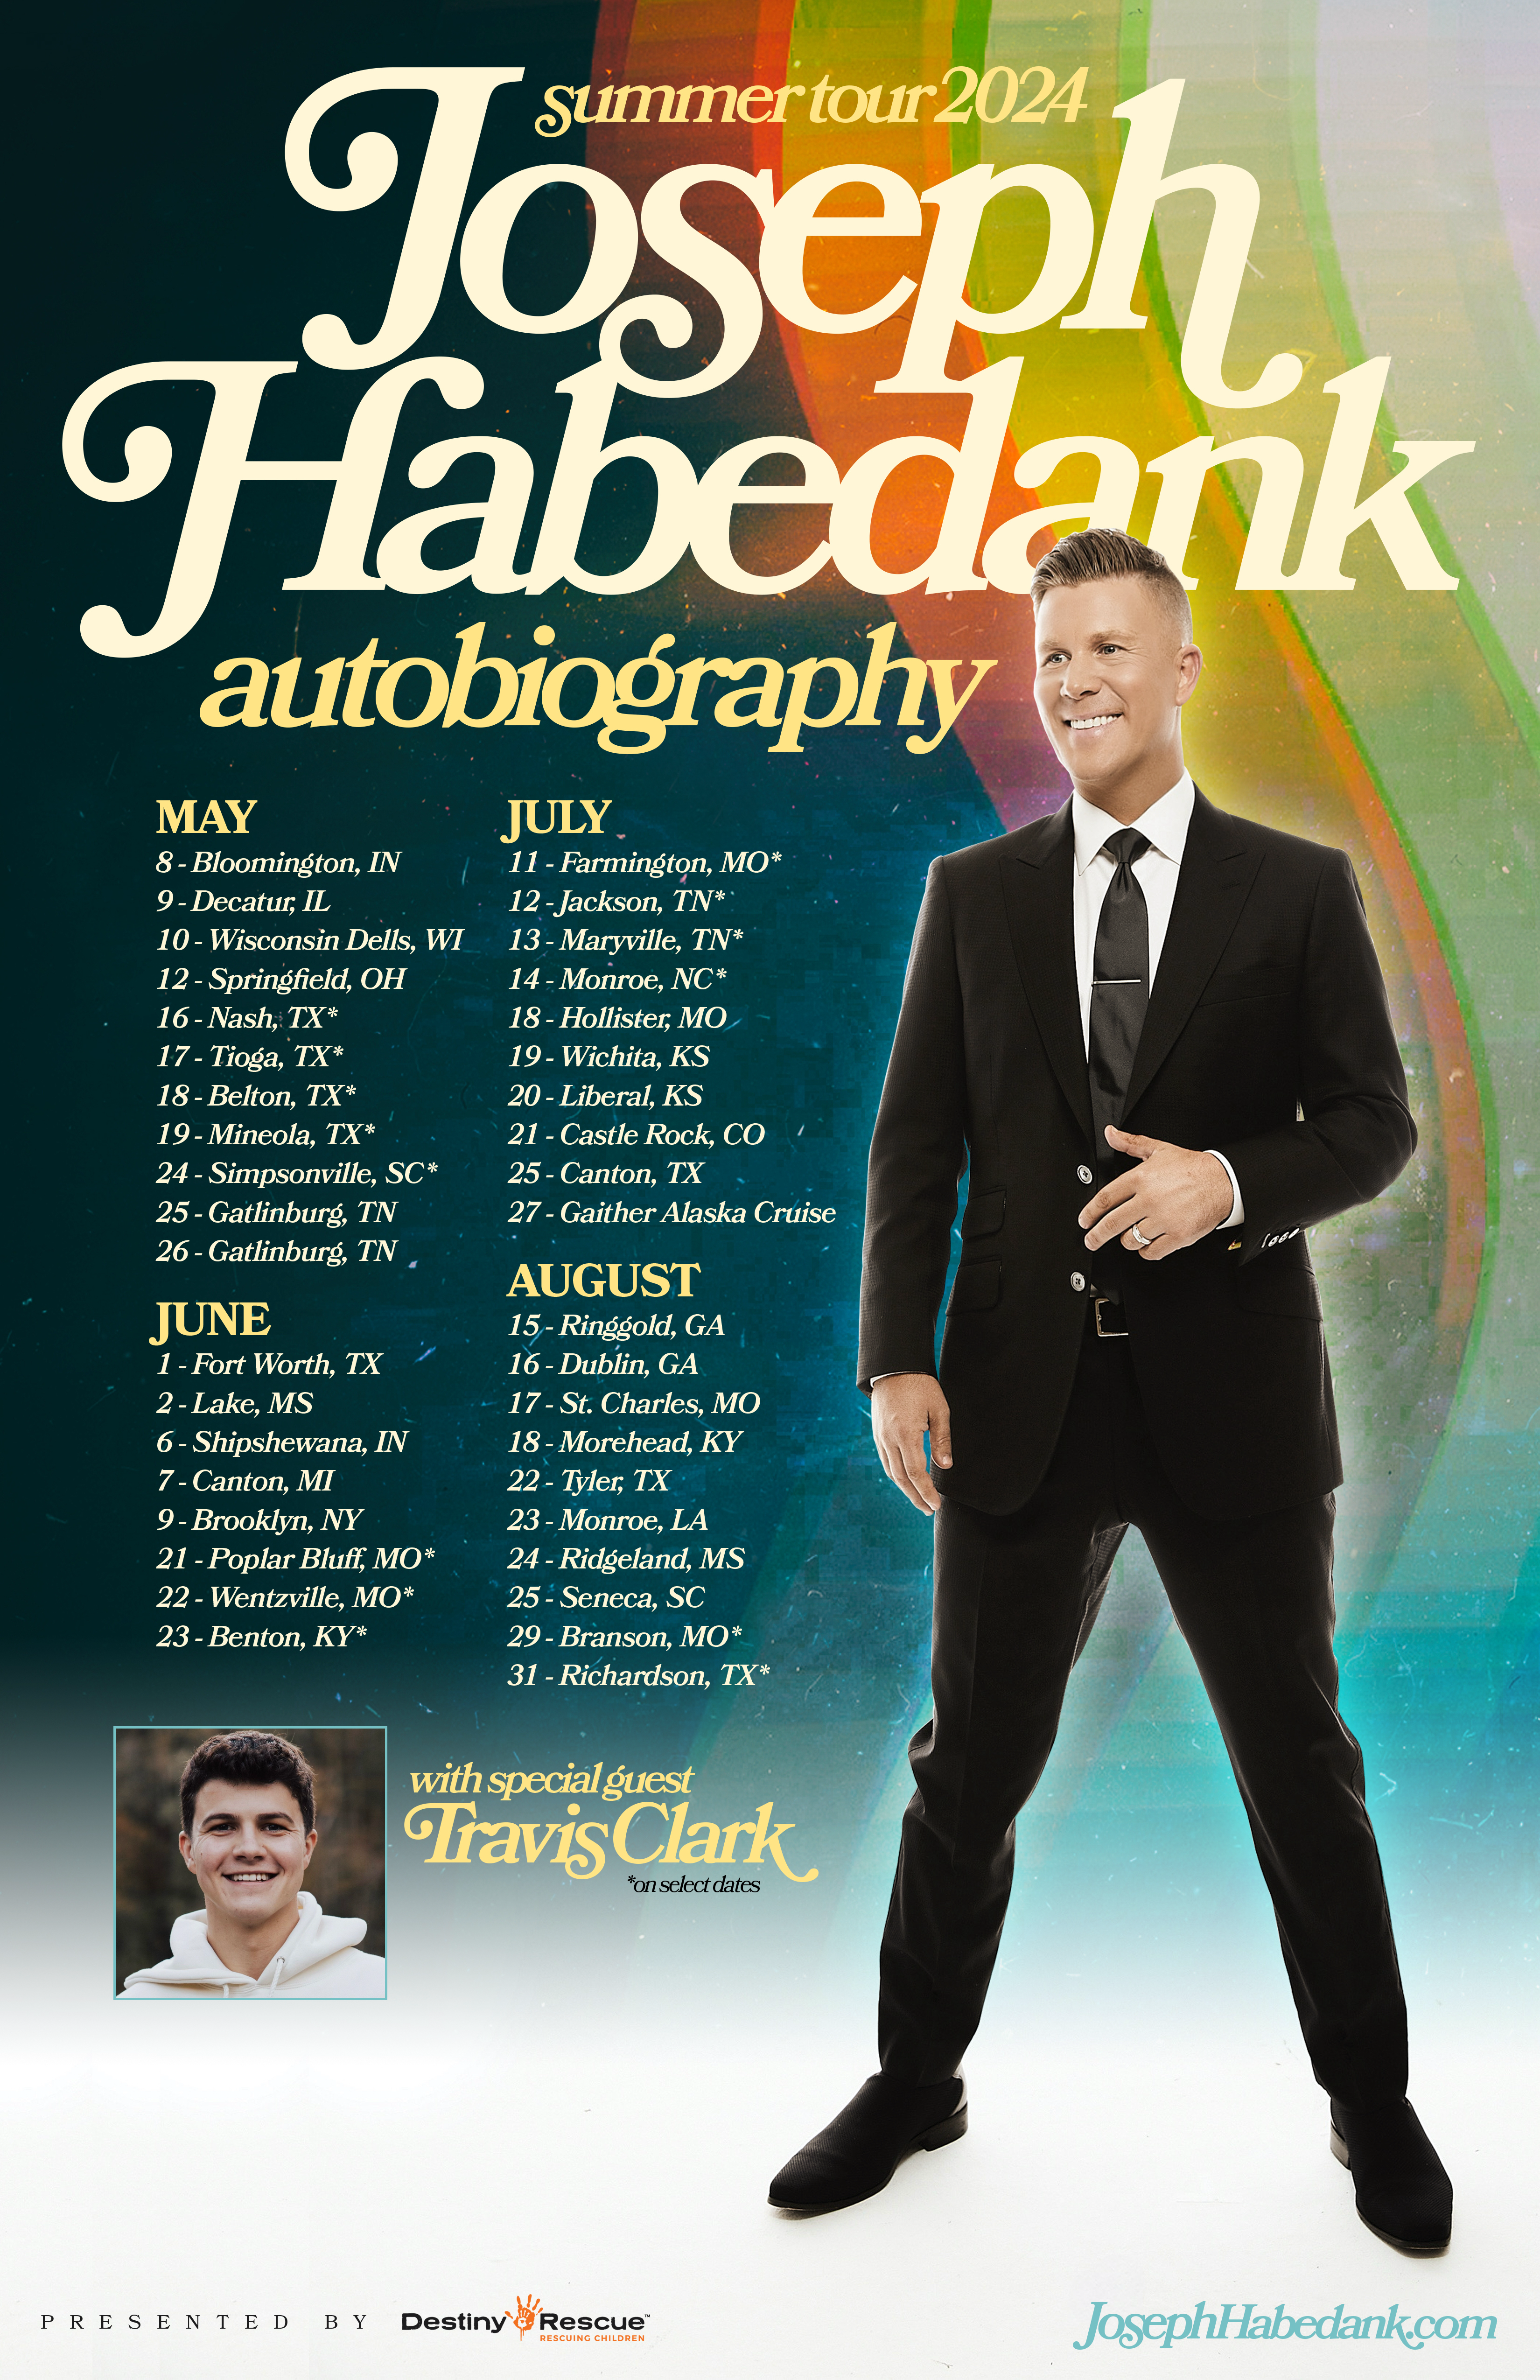 joseph-habedank-announces-autobiography-summer-tour